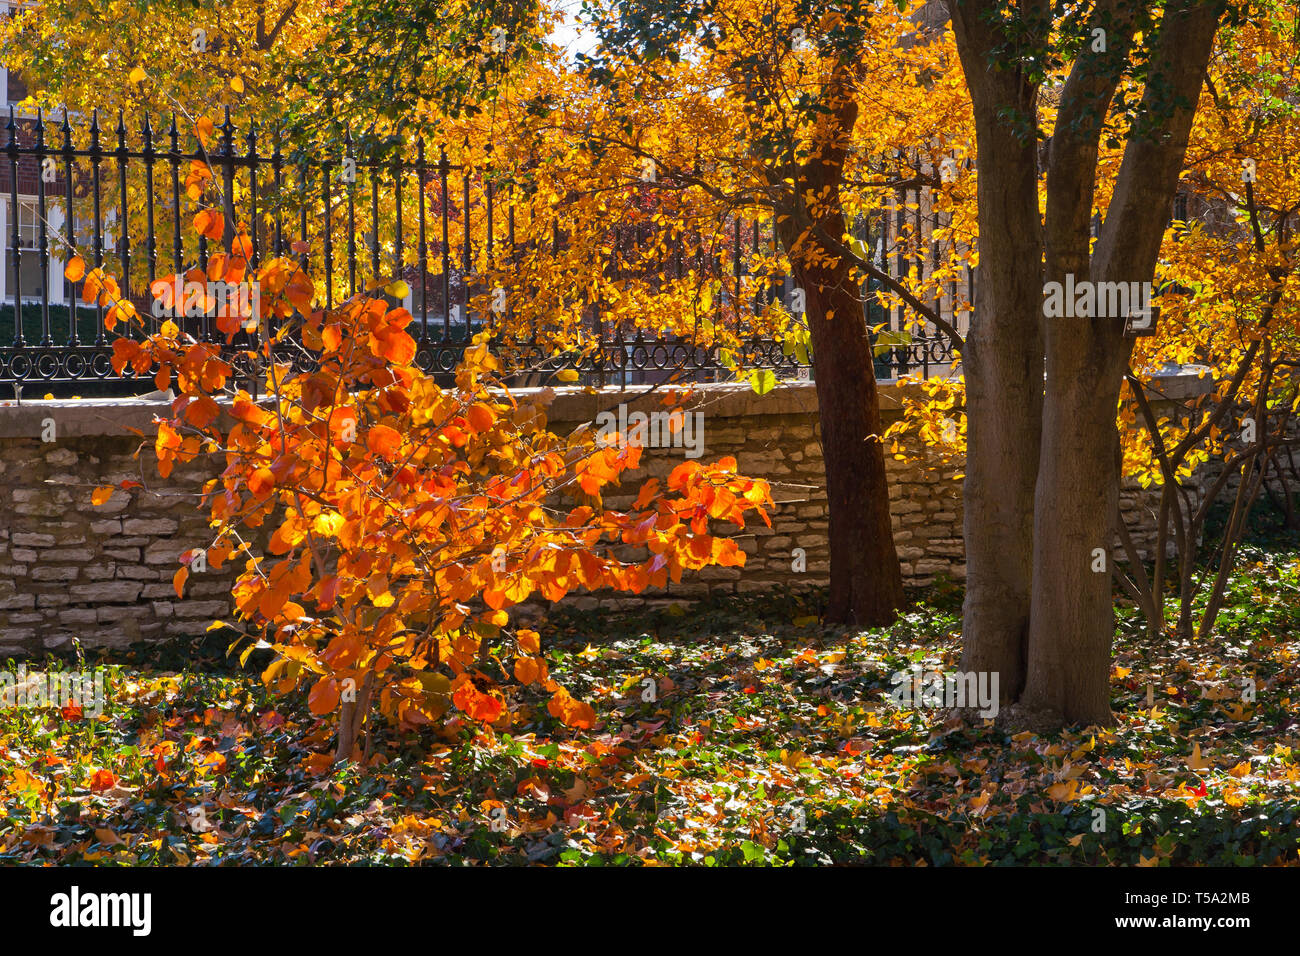 Amamelide boccola arancione con fogliame di autunno nella parte anteriore di una recinzione al giardino botanico del Missouri su una mattina di novembre. Foto Stock